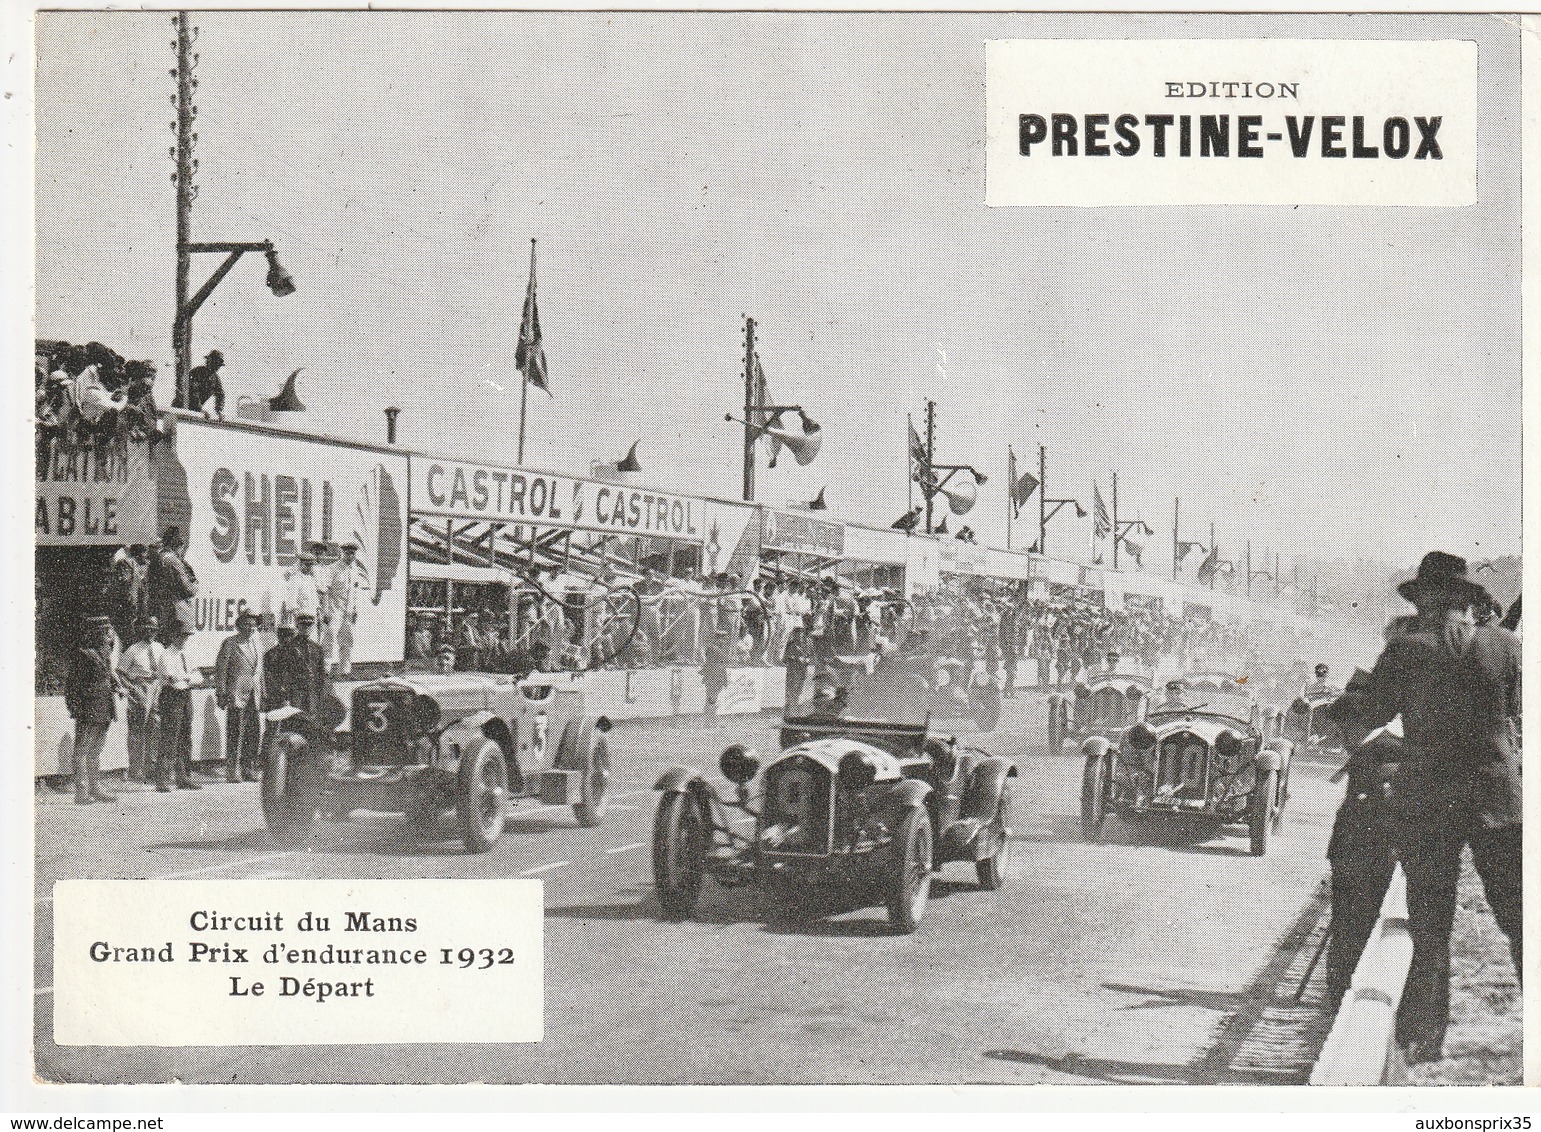 PHOTO - AUTOMOBILE - CIRCUIT DU MANS, GRAND PRIX D'ENDURANCE 1932 - LE DEPART - 72 - Cars